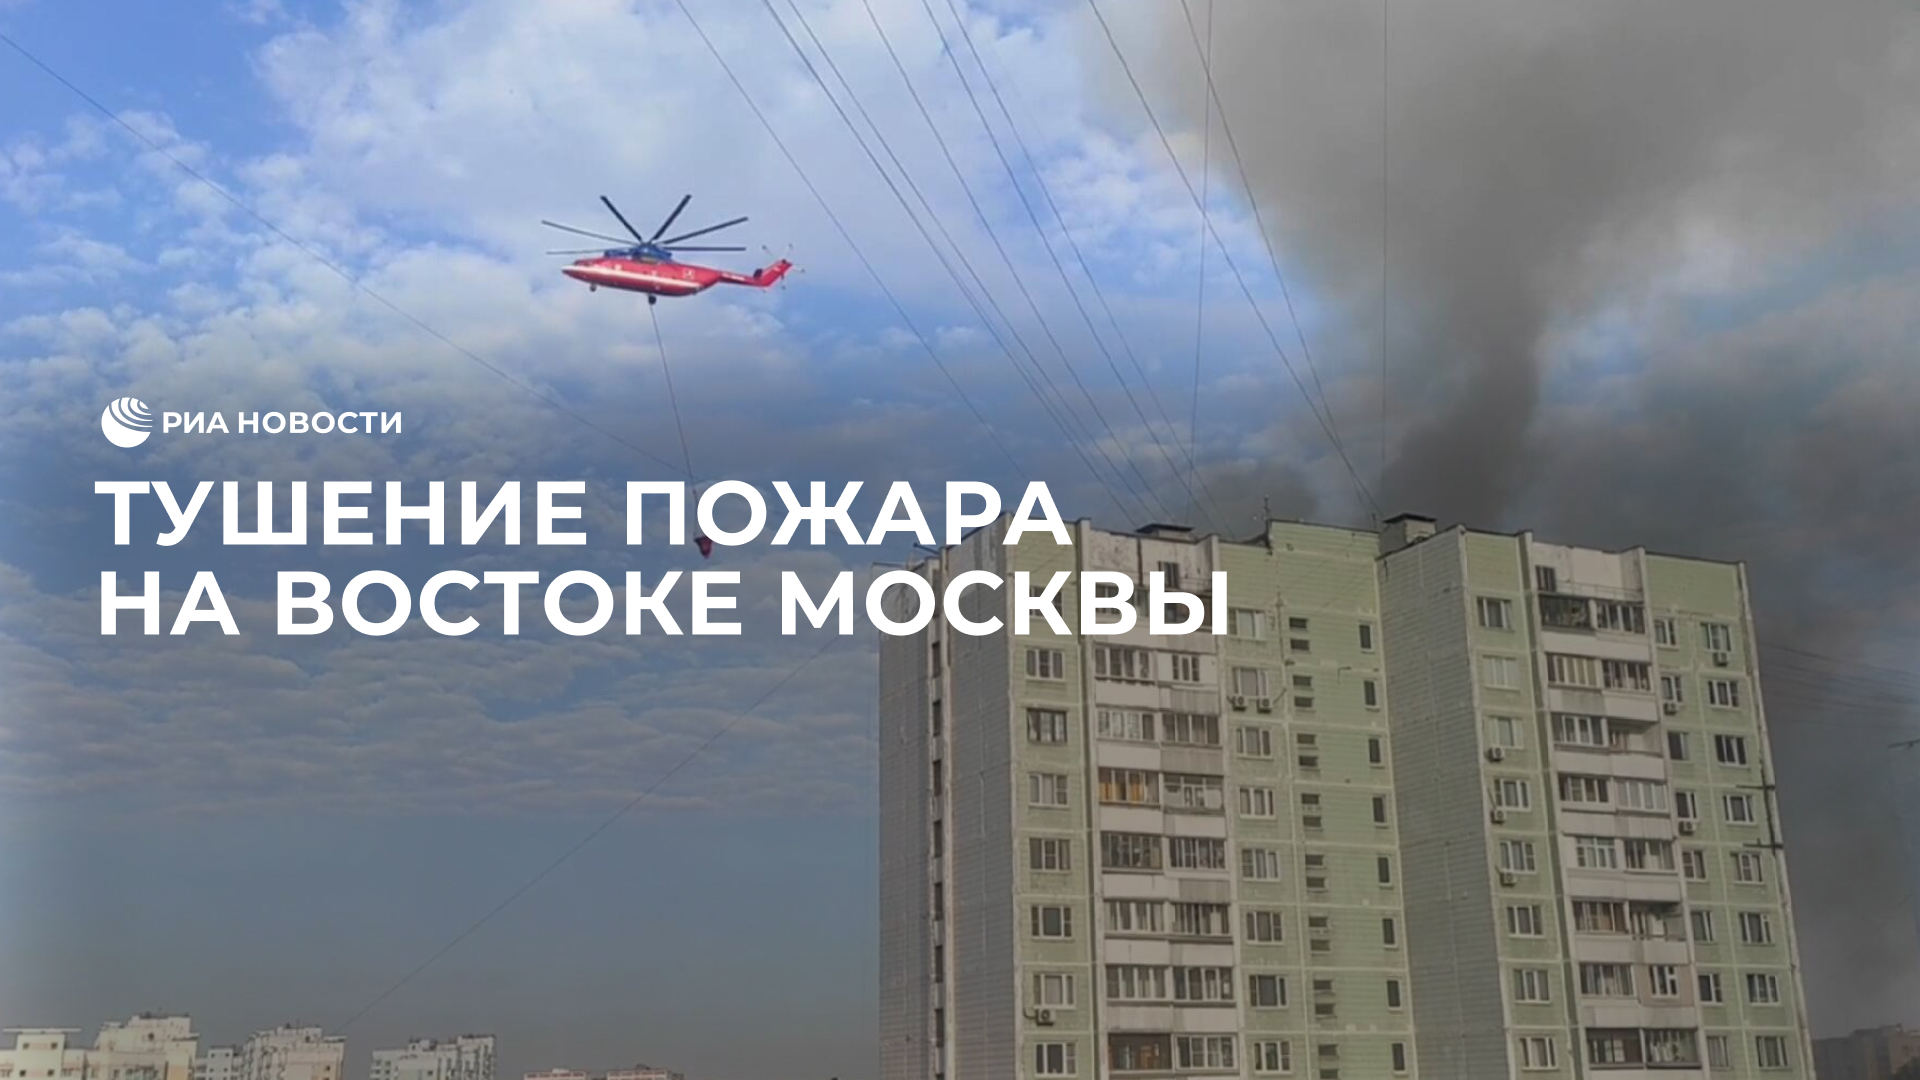 Тушение пожара на востоке Москвы